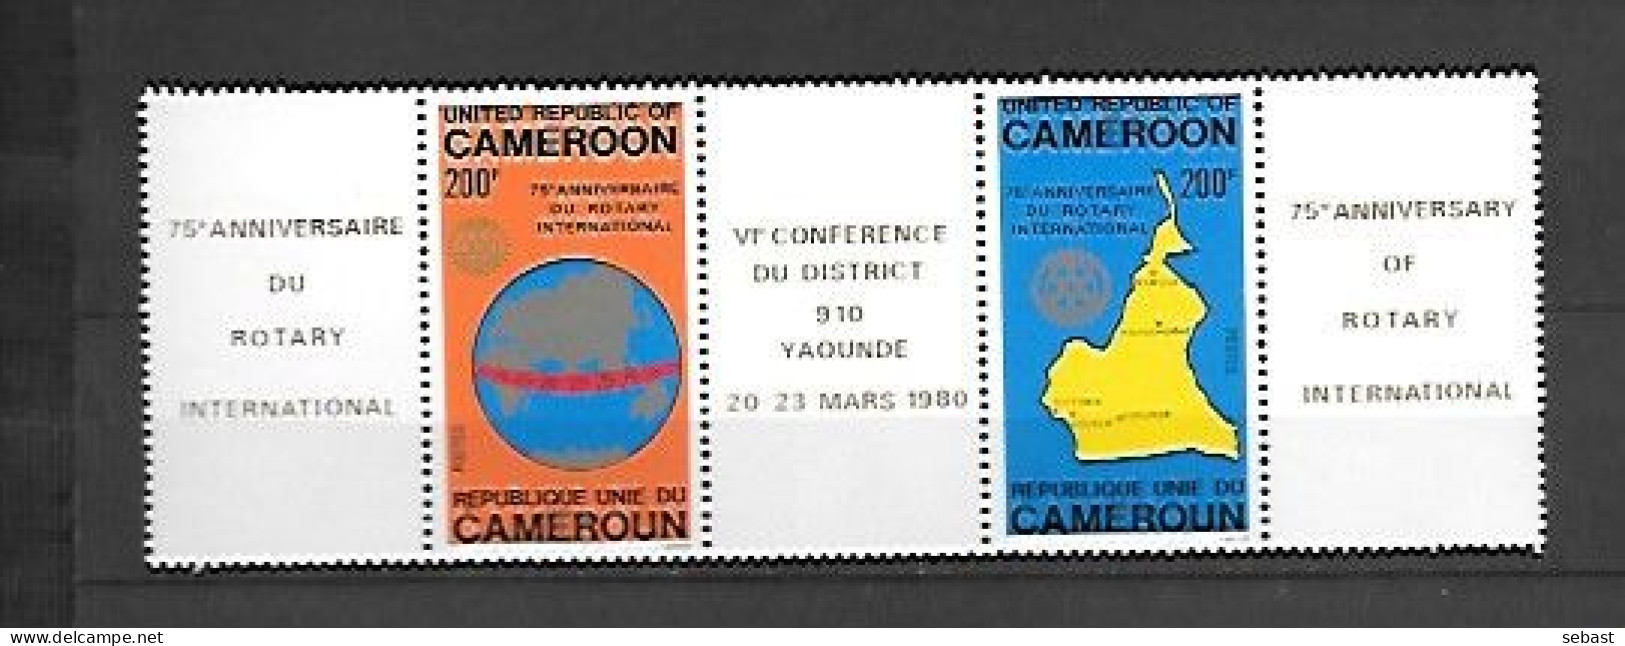 TIMBRE NEUF DU CAMEROUN DE 1980 N° MICHEL 925/26 - Cameroun (1960-...)